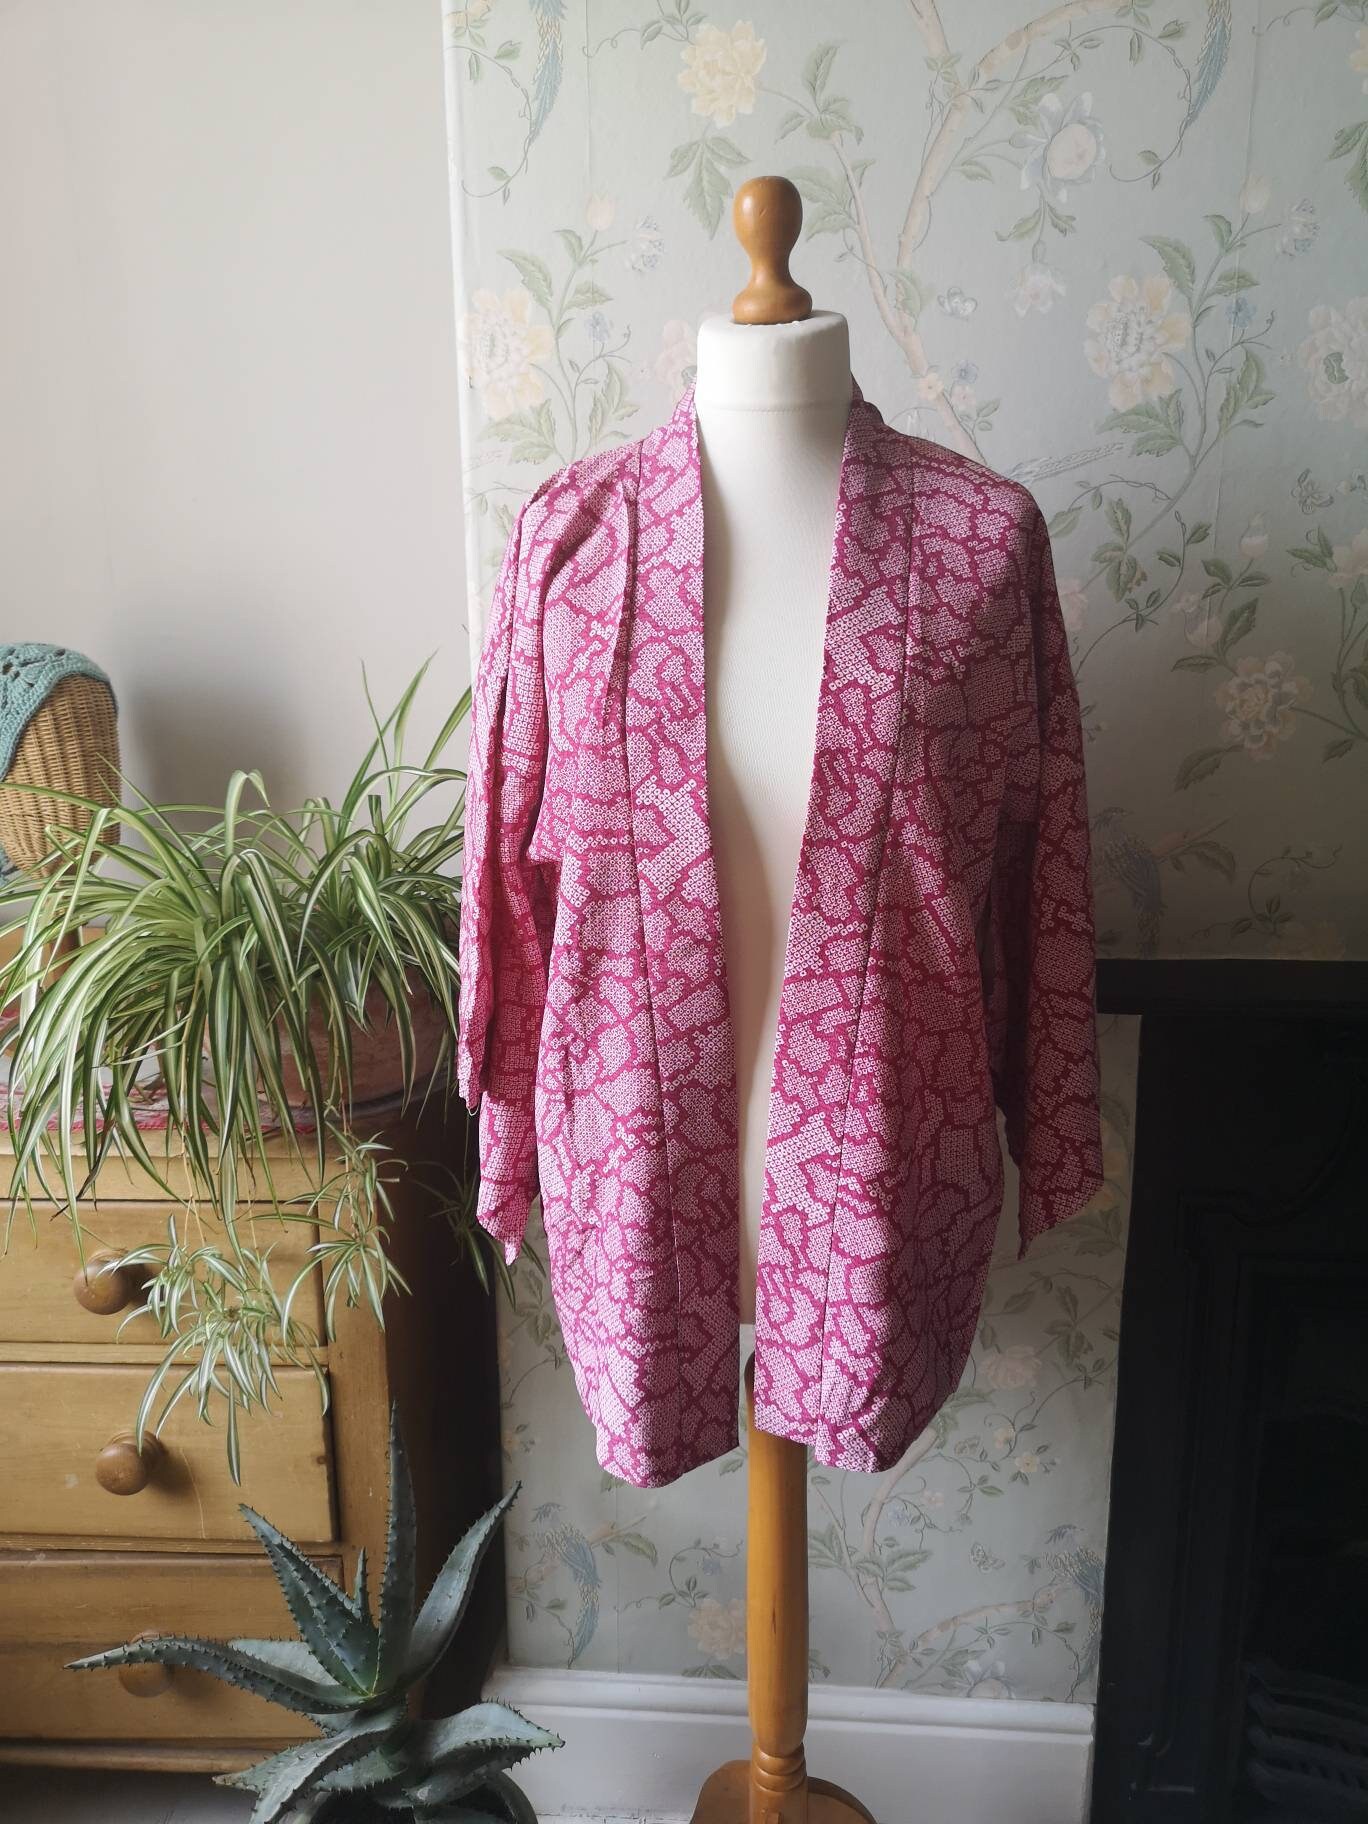 Vintage Clothing Japanese Kimono Jacket Pink Geometric Design - Etsy UK